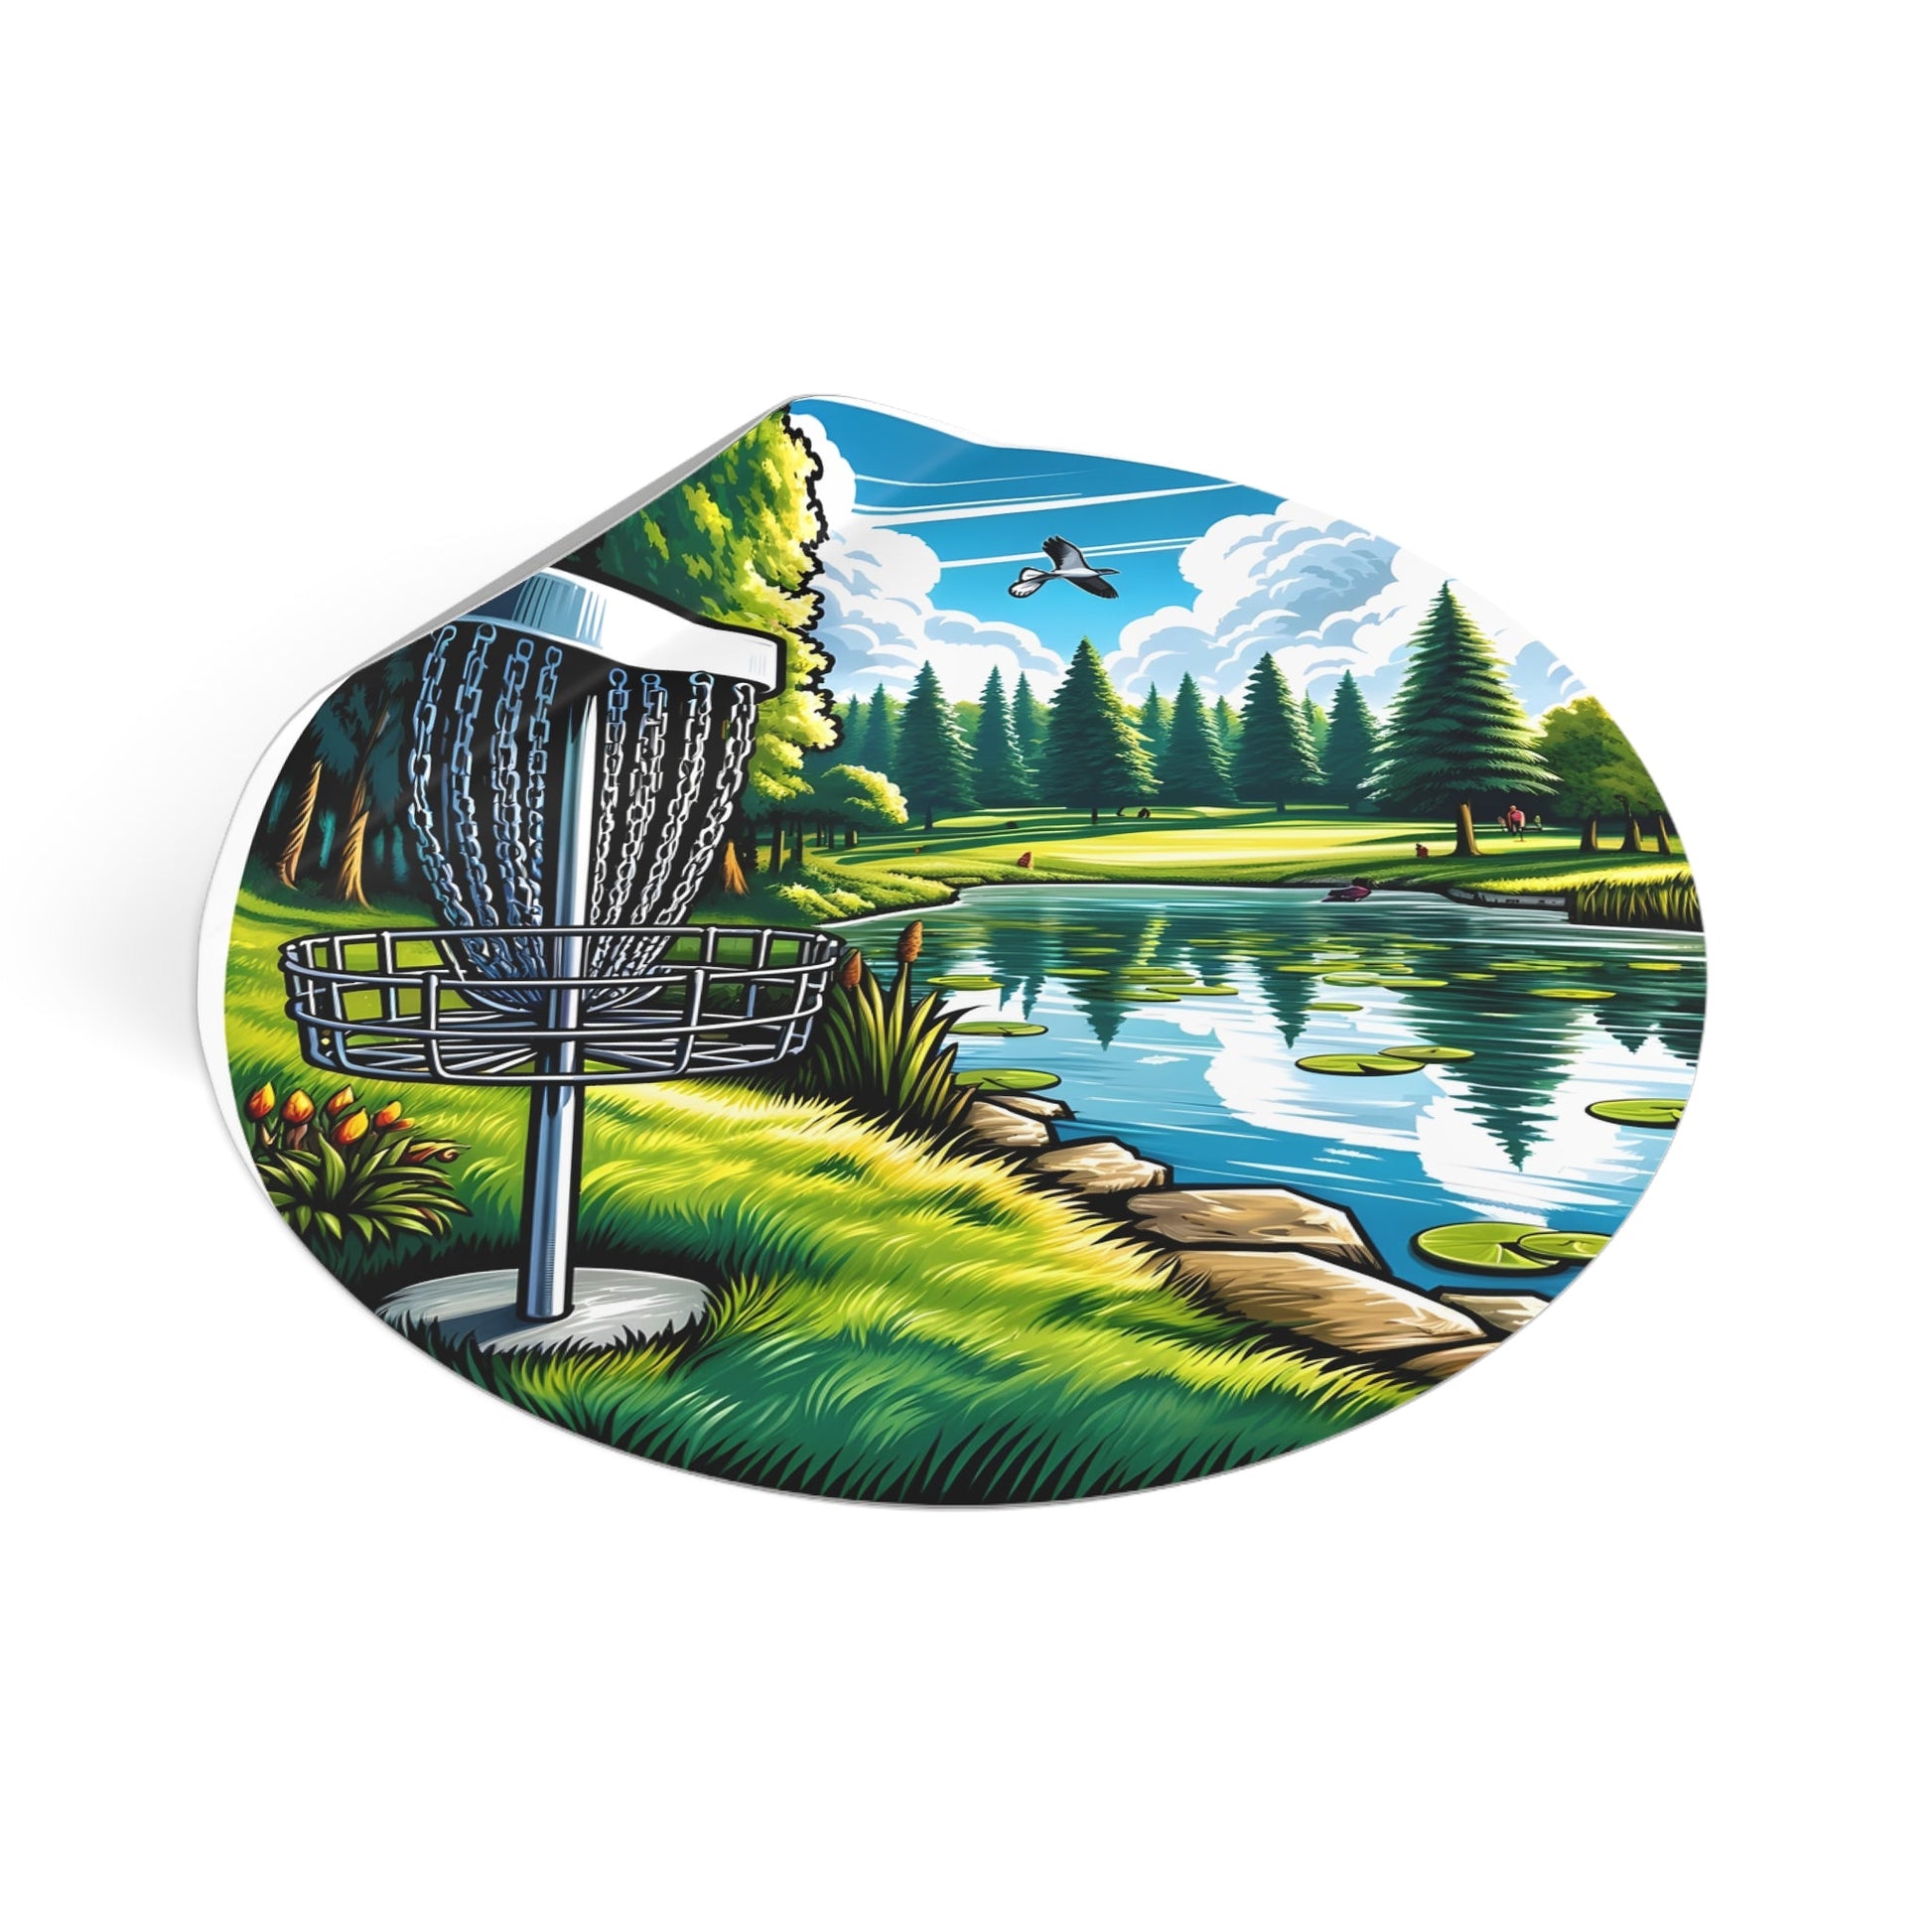 Disc Golf Basket by Pond v1 Sticker - Round Vinyl Stickers - Quirky Goodies